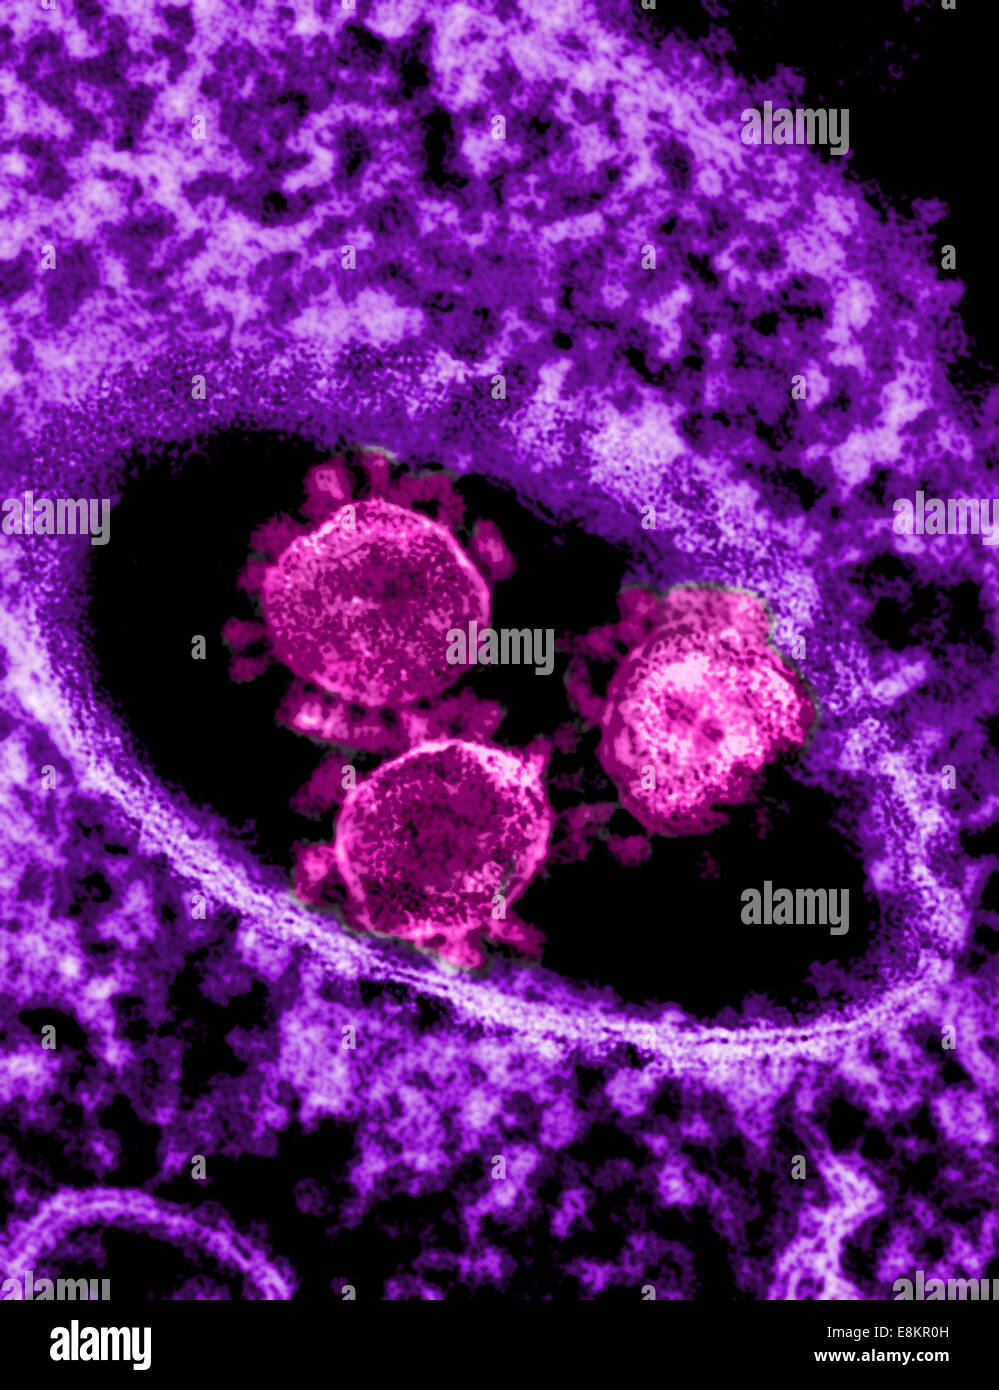 Colorizzato micrografia elettronica a trasmissione che mostra particelle del Medio Oriente la sindrome respiratoria Coronavirus che è emersa in Foto Stock